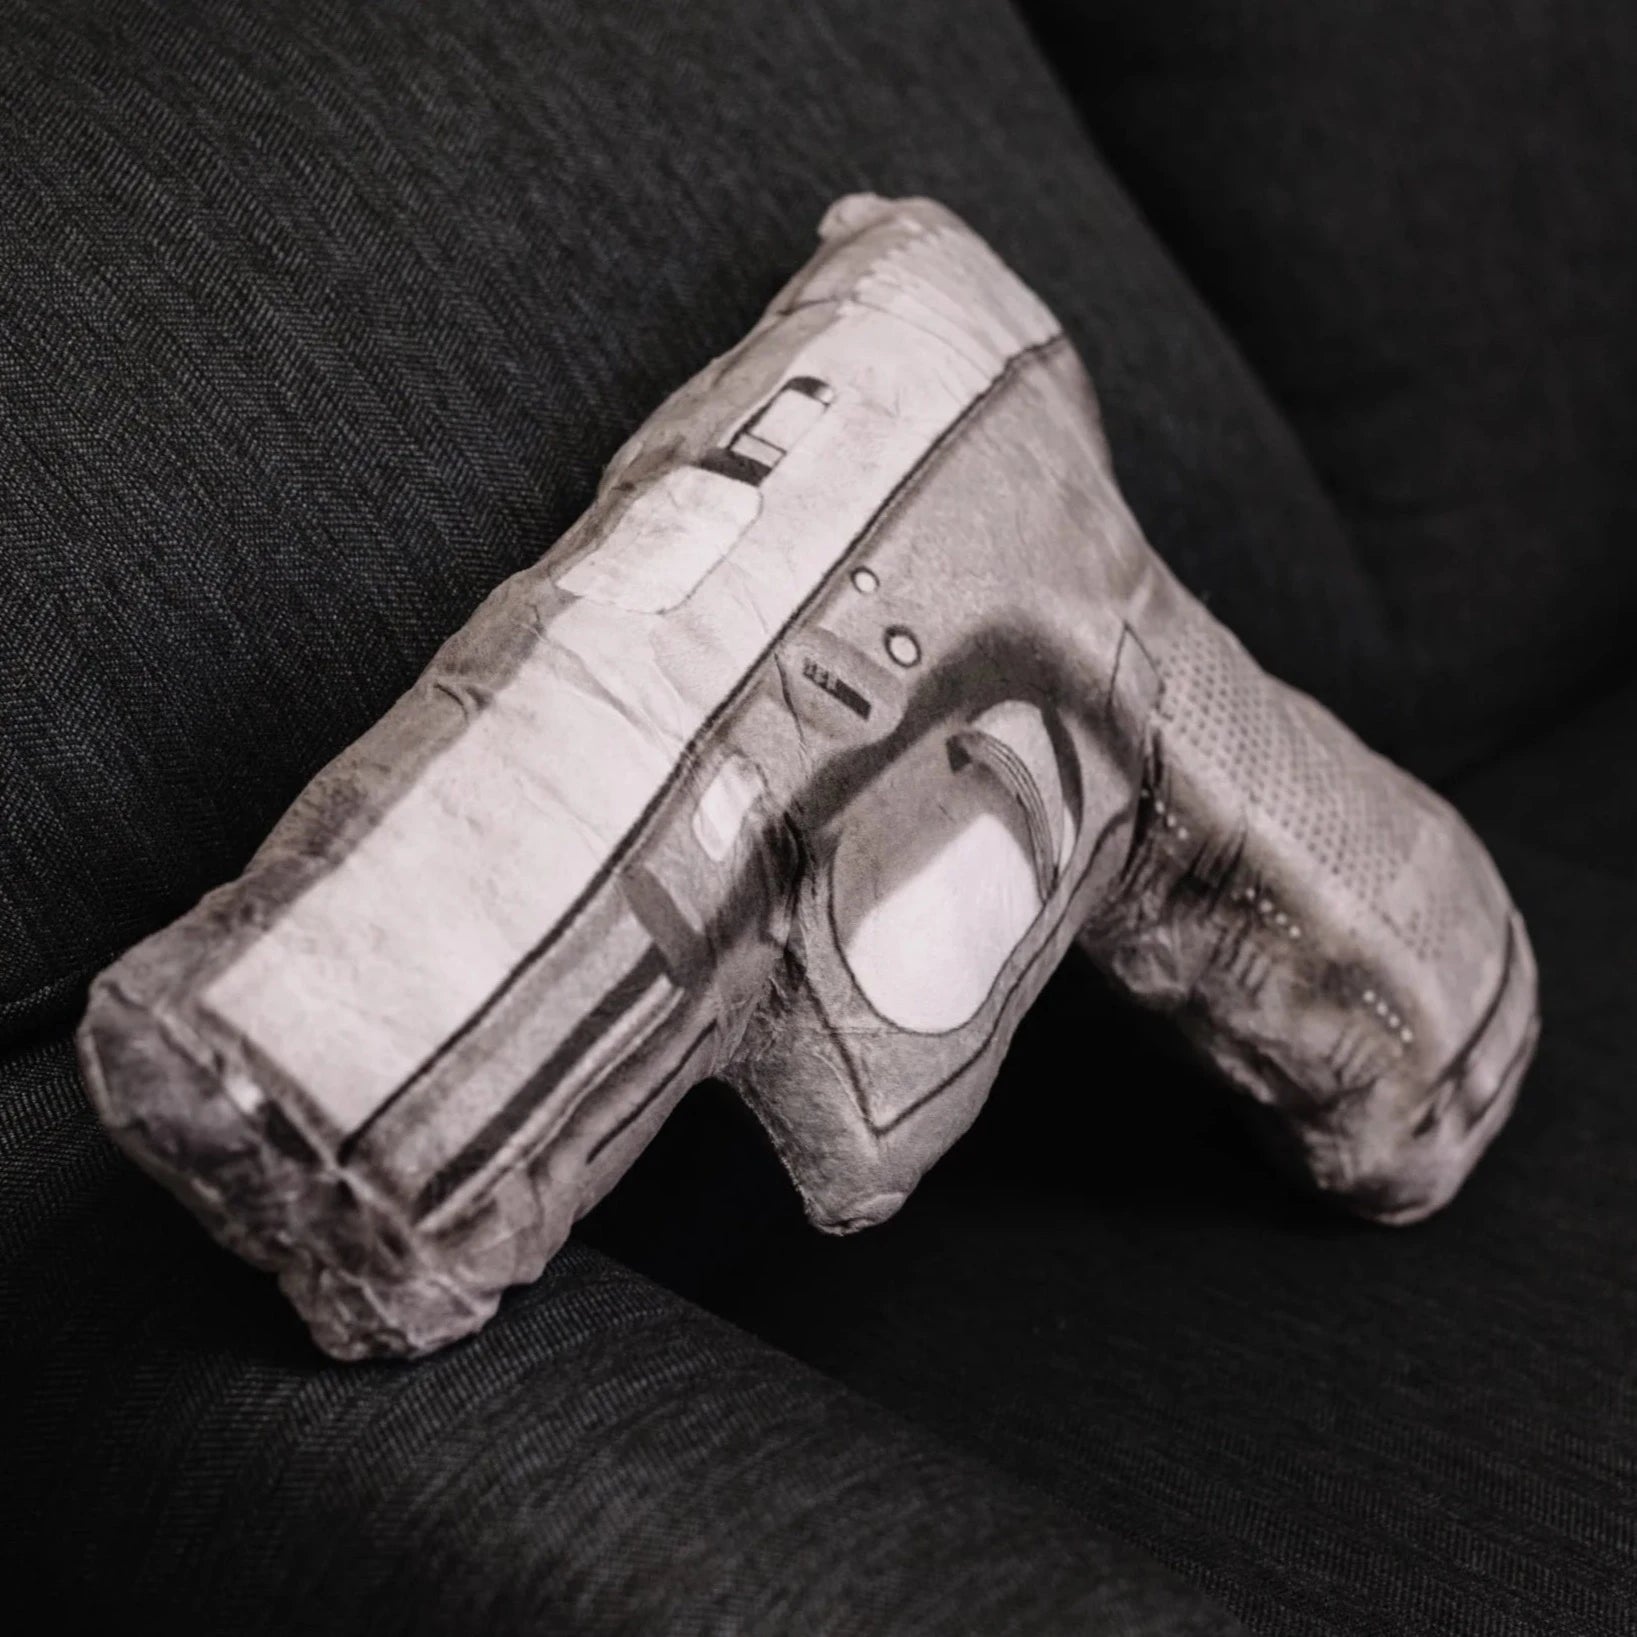 Caliber Gourmet Automatic Handgun Pillow-Tac Essentials